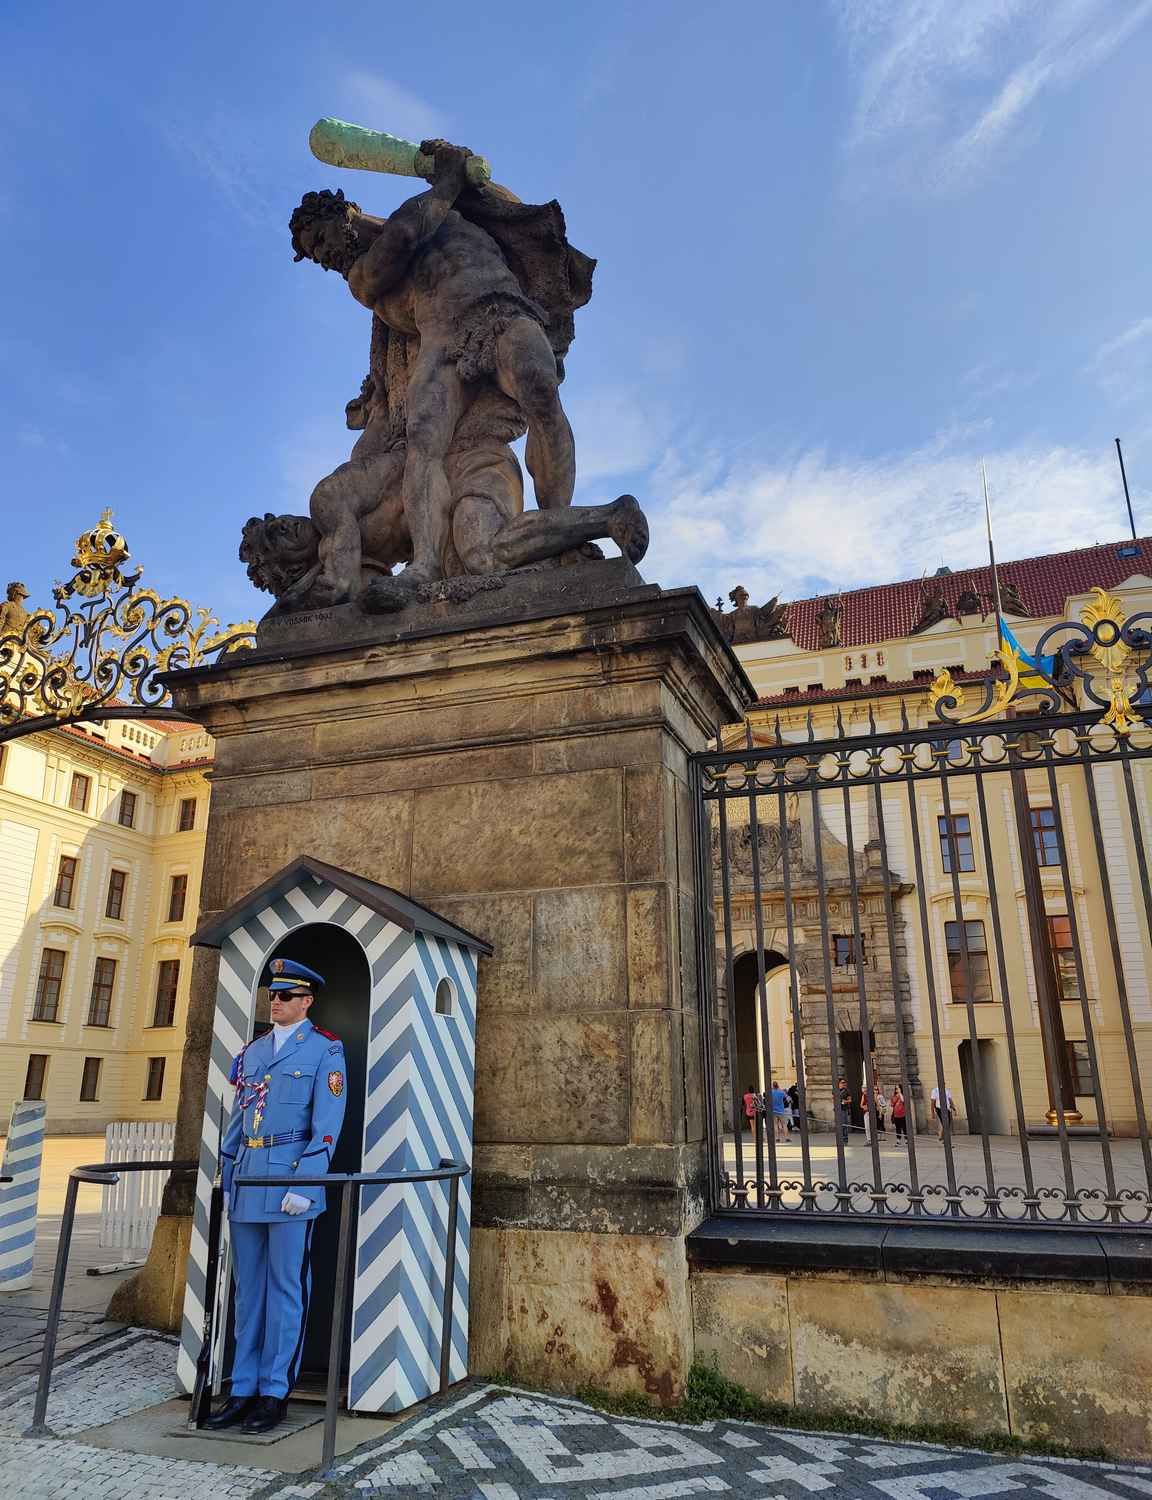 Ensimmäiseksi Prahan linnalla tulee vastaan kunniavartiointi.